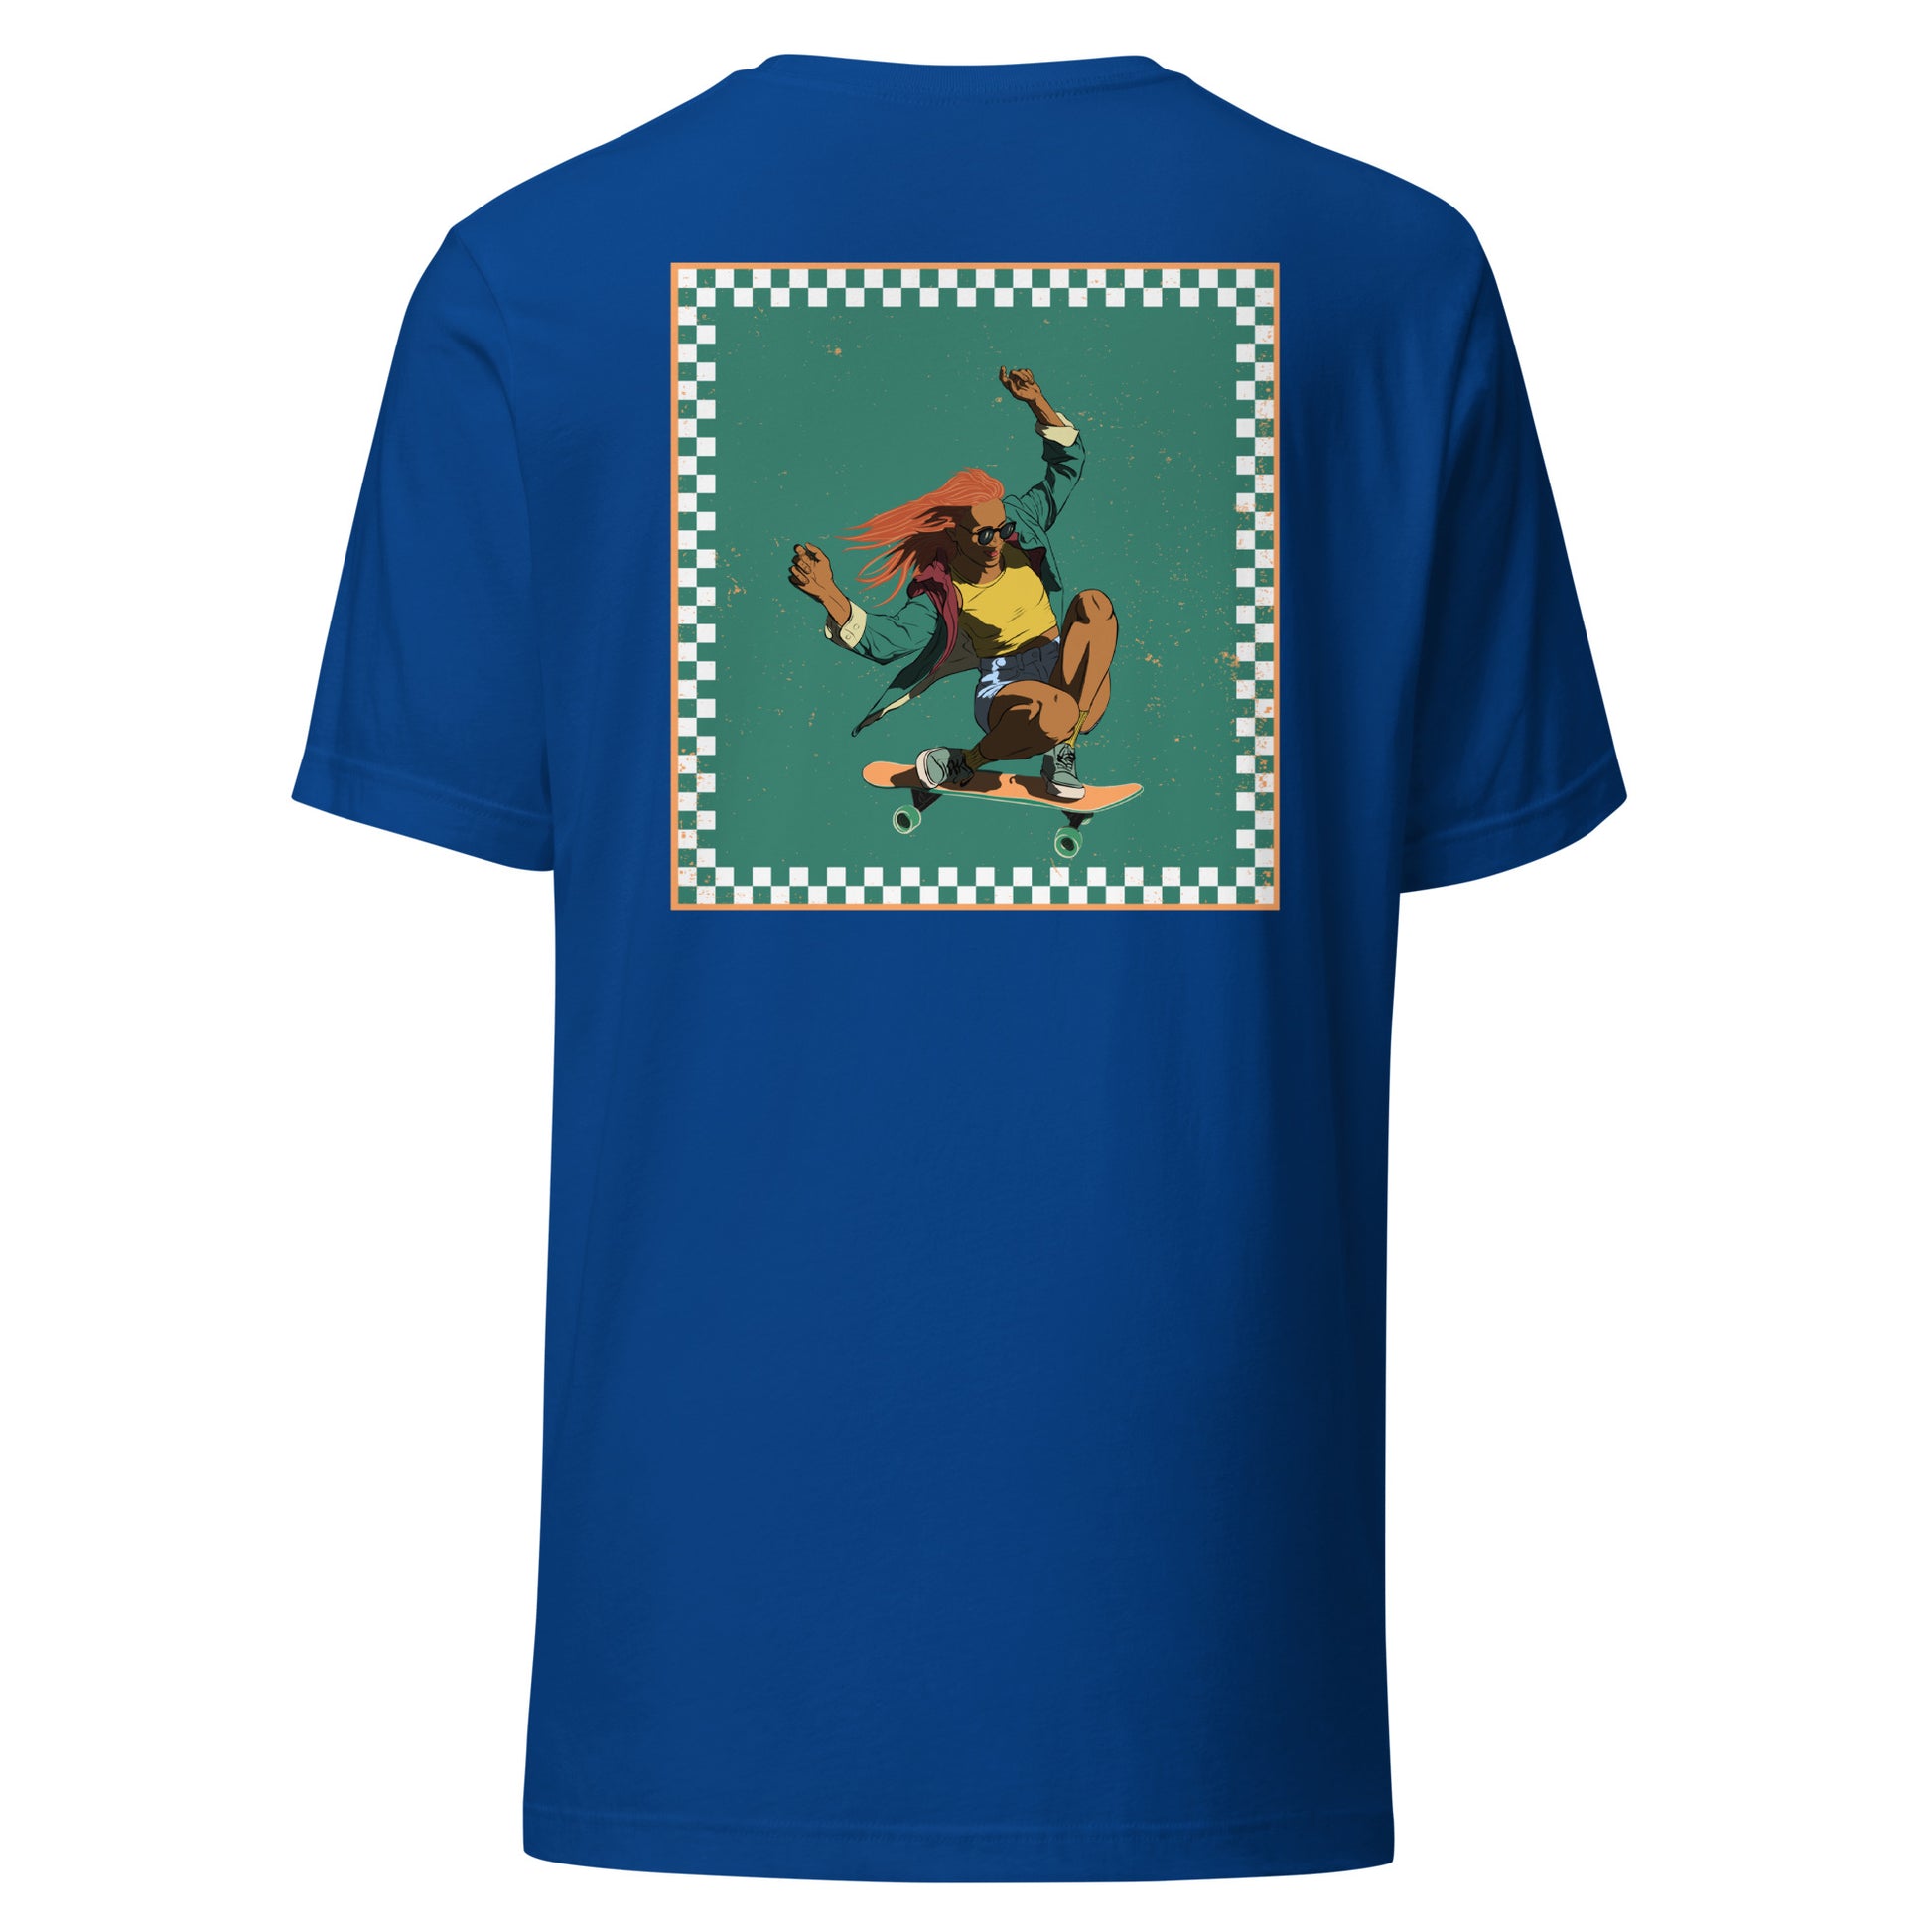 T-Shirt Shred It skateboard style vans avec une skateuse qui carve. Carreaux bleu vert et blanc. Tshirt unisex de dos couleur bleu royal